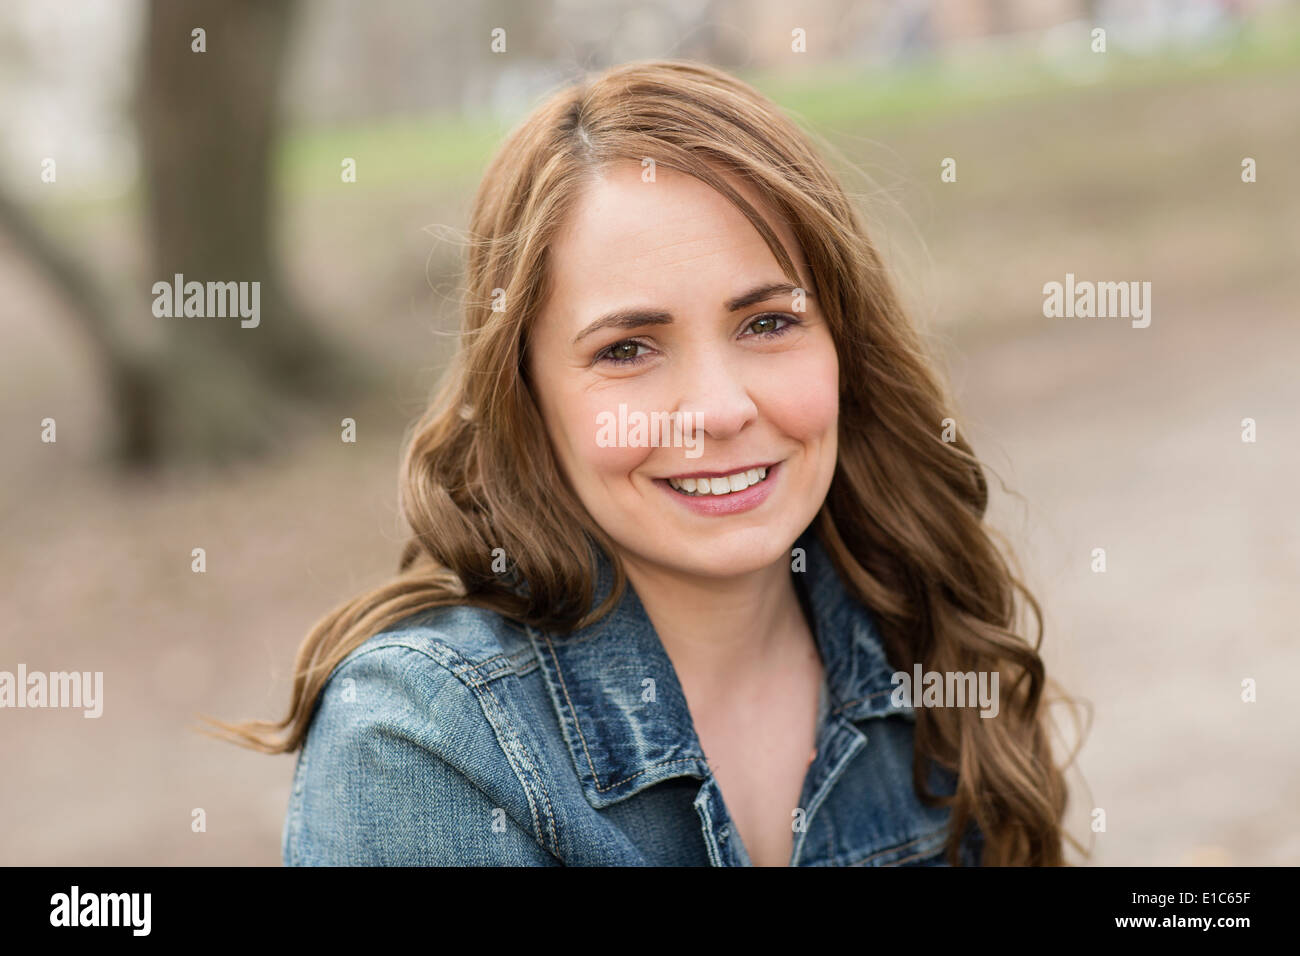 Eine junge Frau im Central Park. Stockfoto